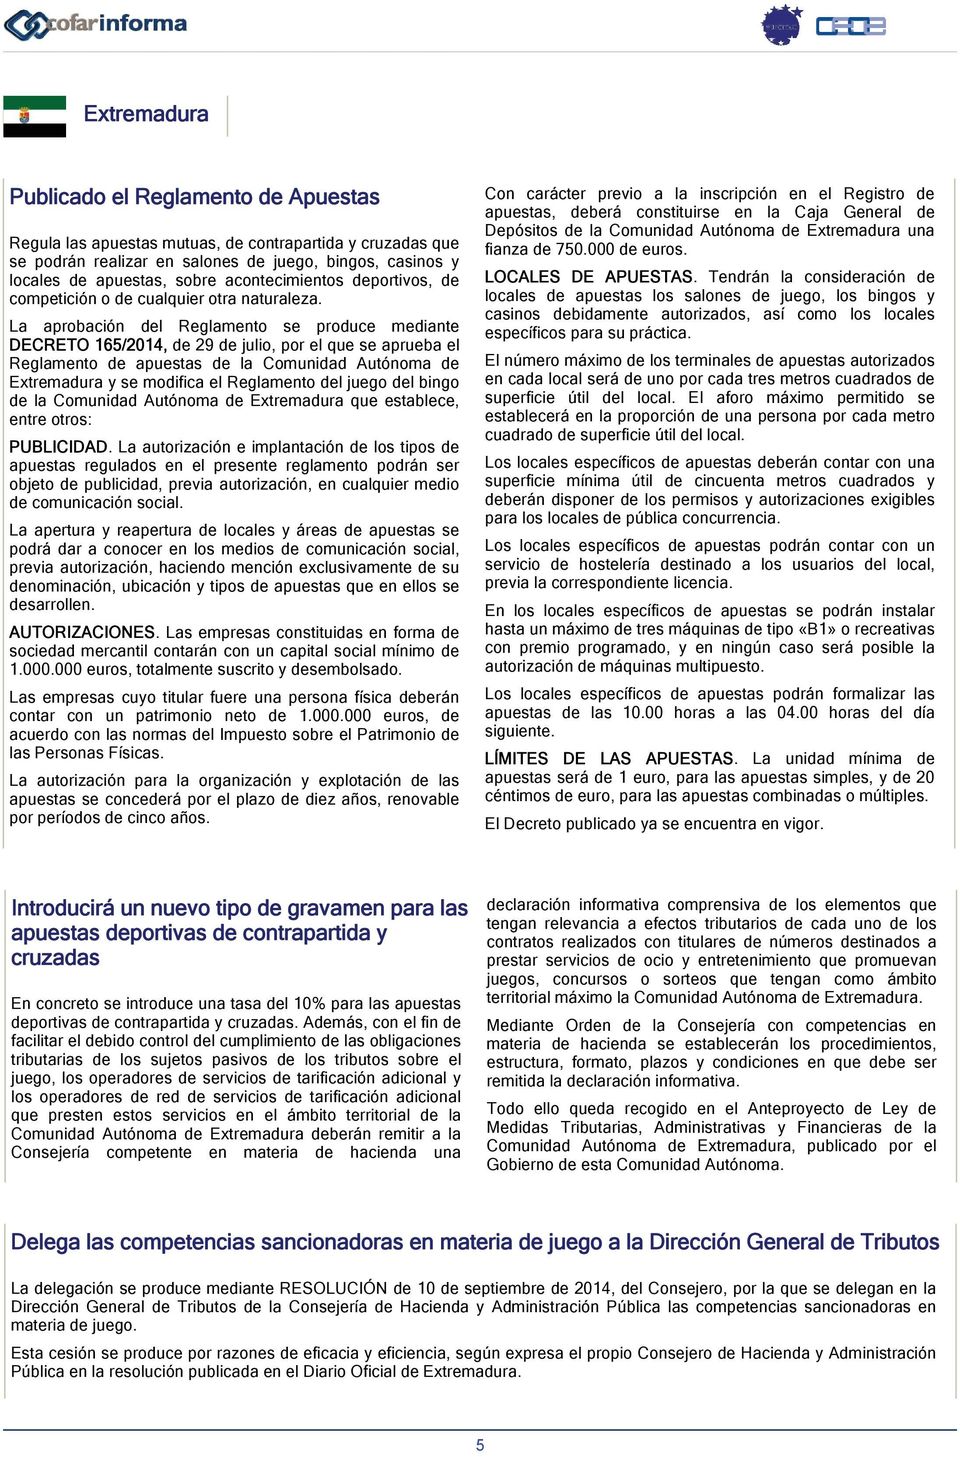 La aprobación del Reglamento se produce mediante DECRETO 165/2014, de 29 de julio, por el que se aprueba el Reglamento de apuestas de la Comunidad Autónoma de Extremadura y se modifica el Reglamento